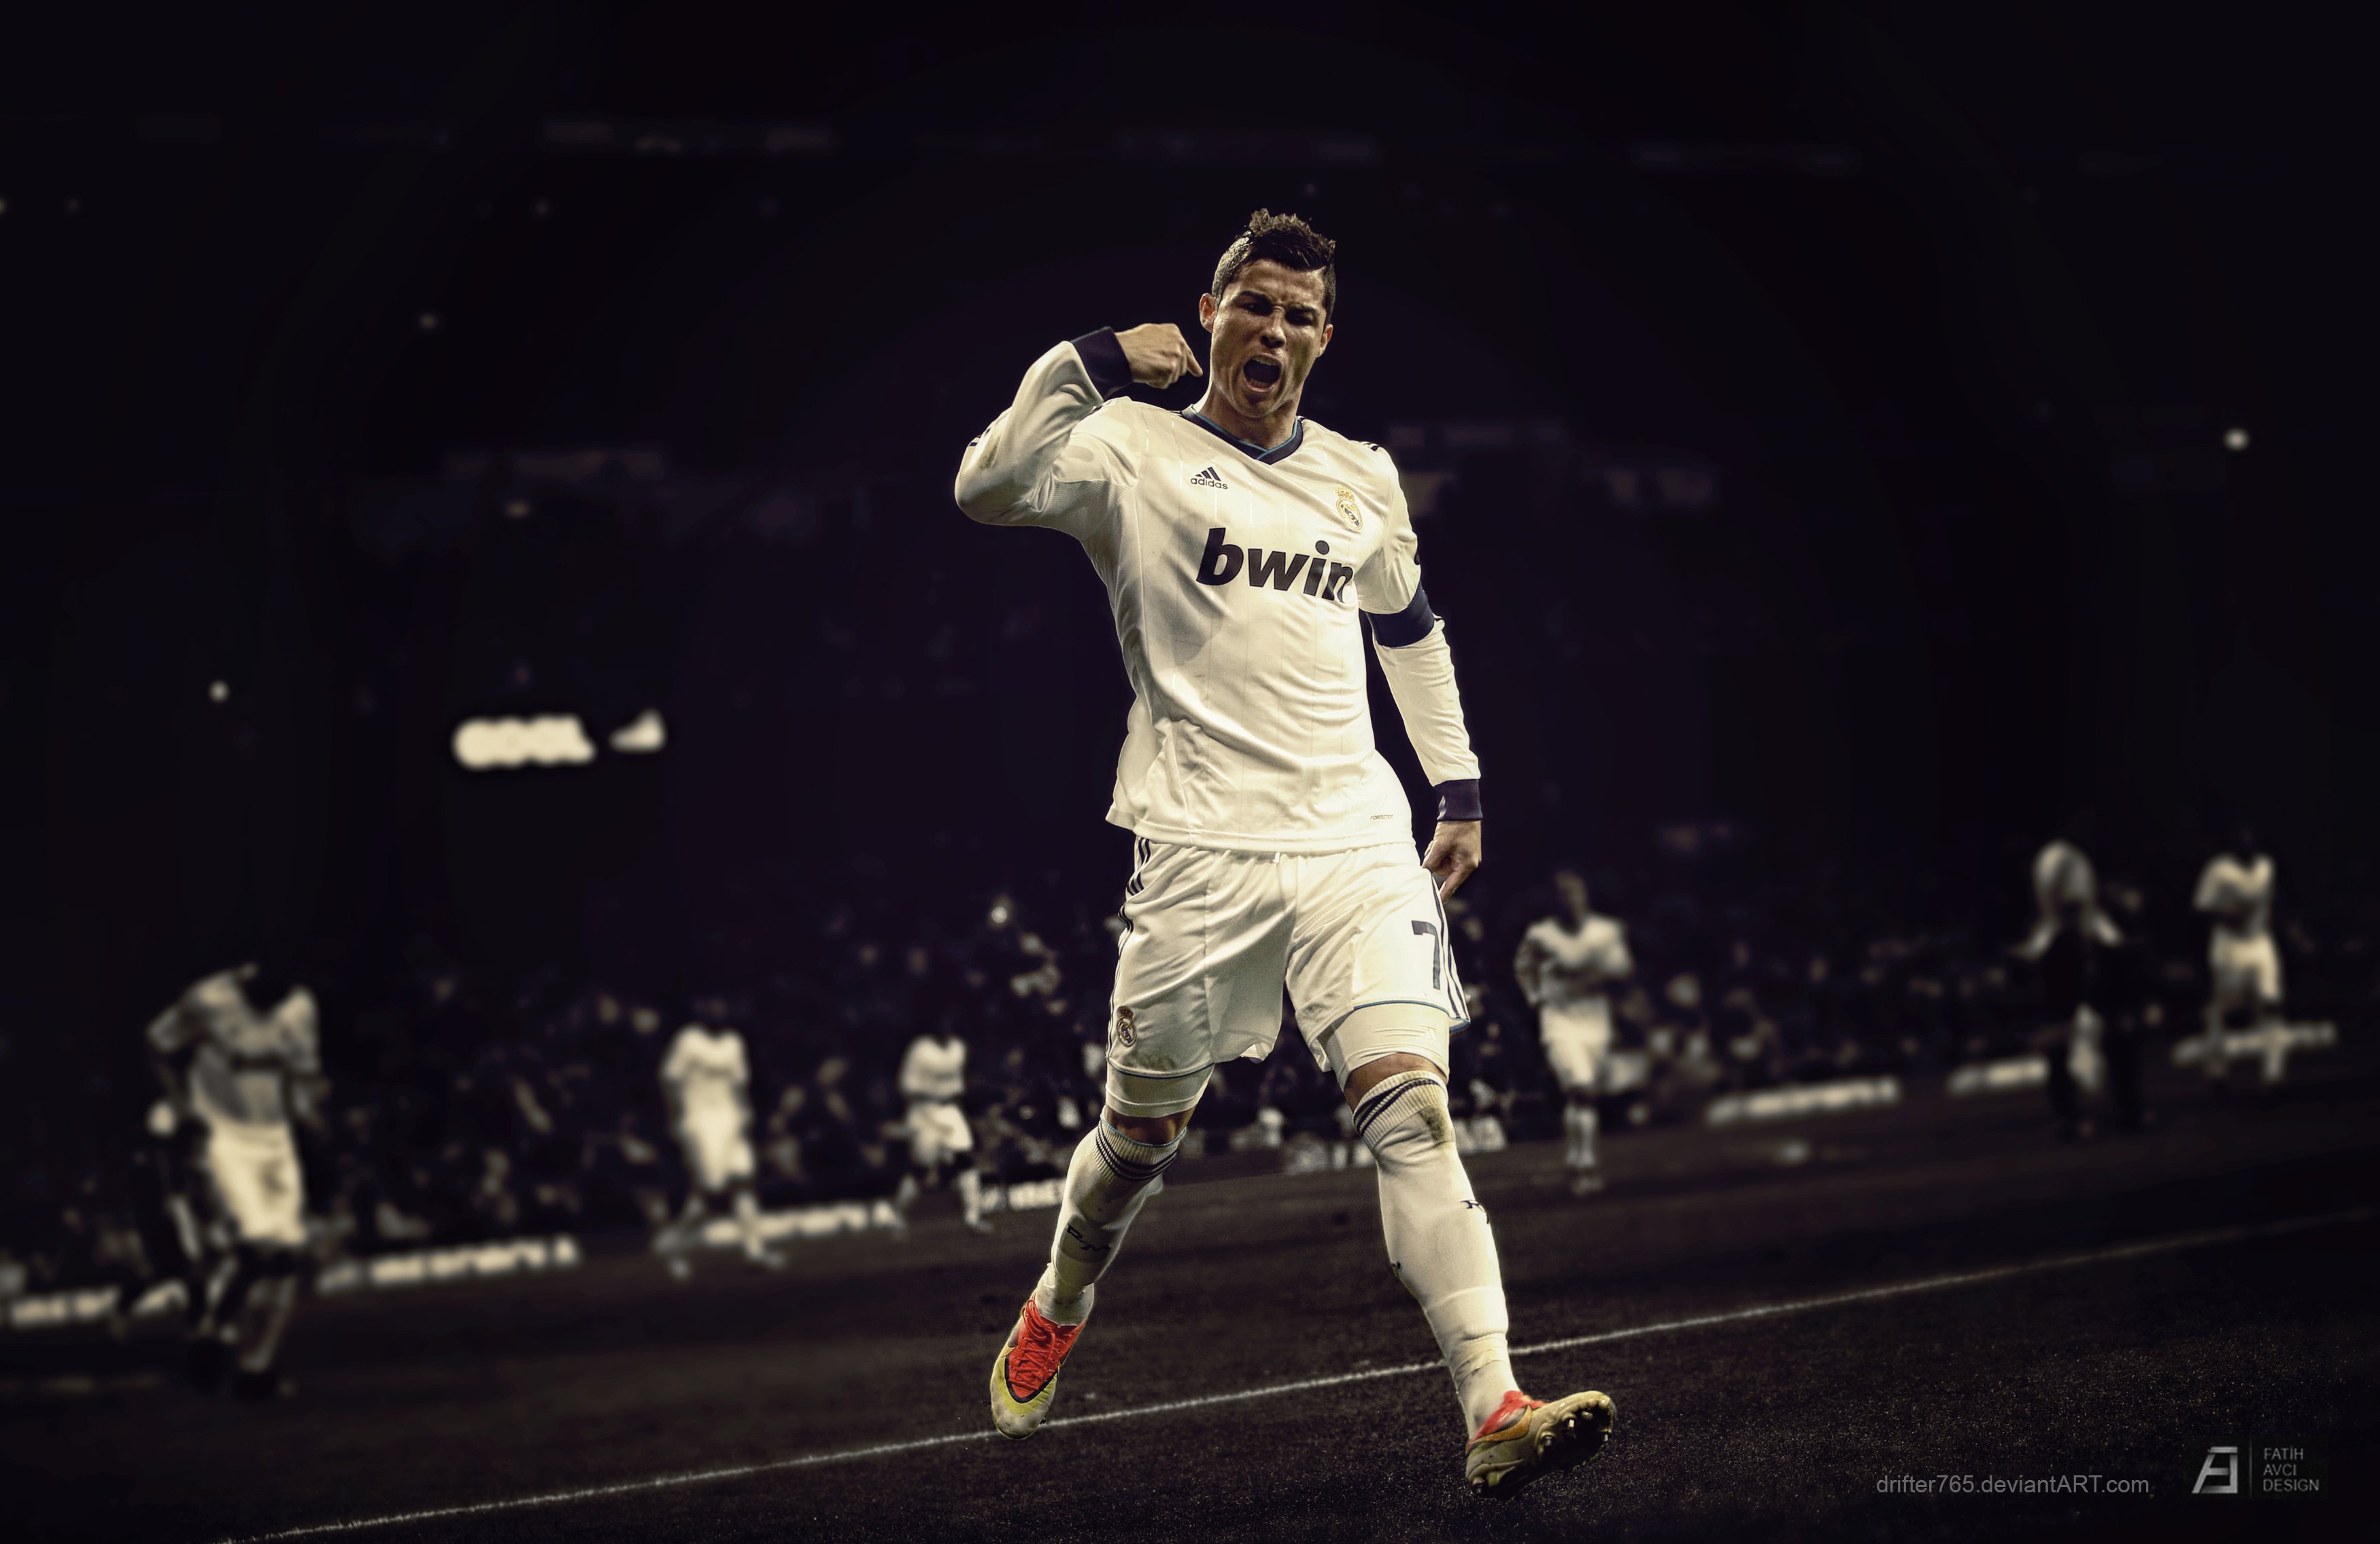 Cristiano Ronaldo Wallpaper Image Photo Picture Background